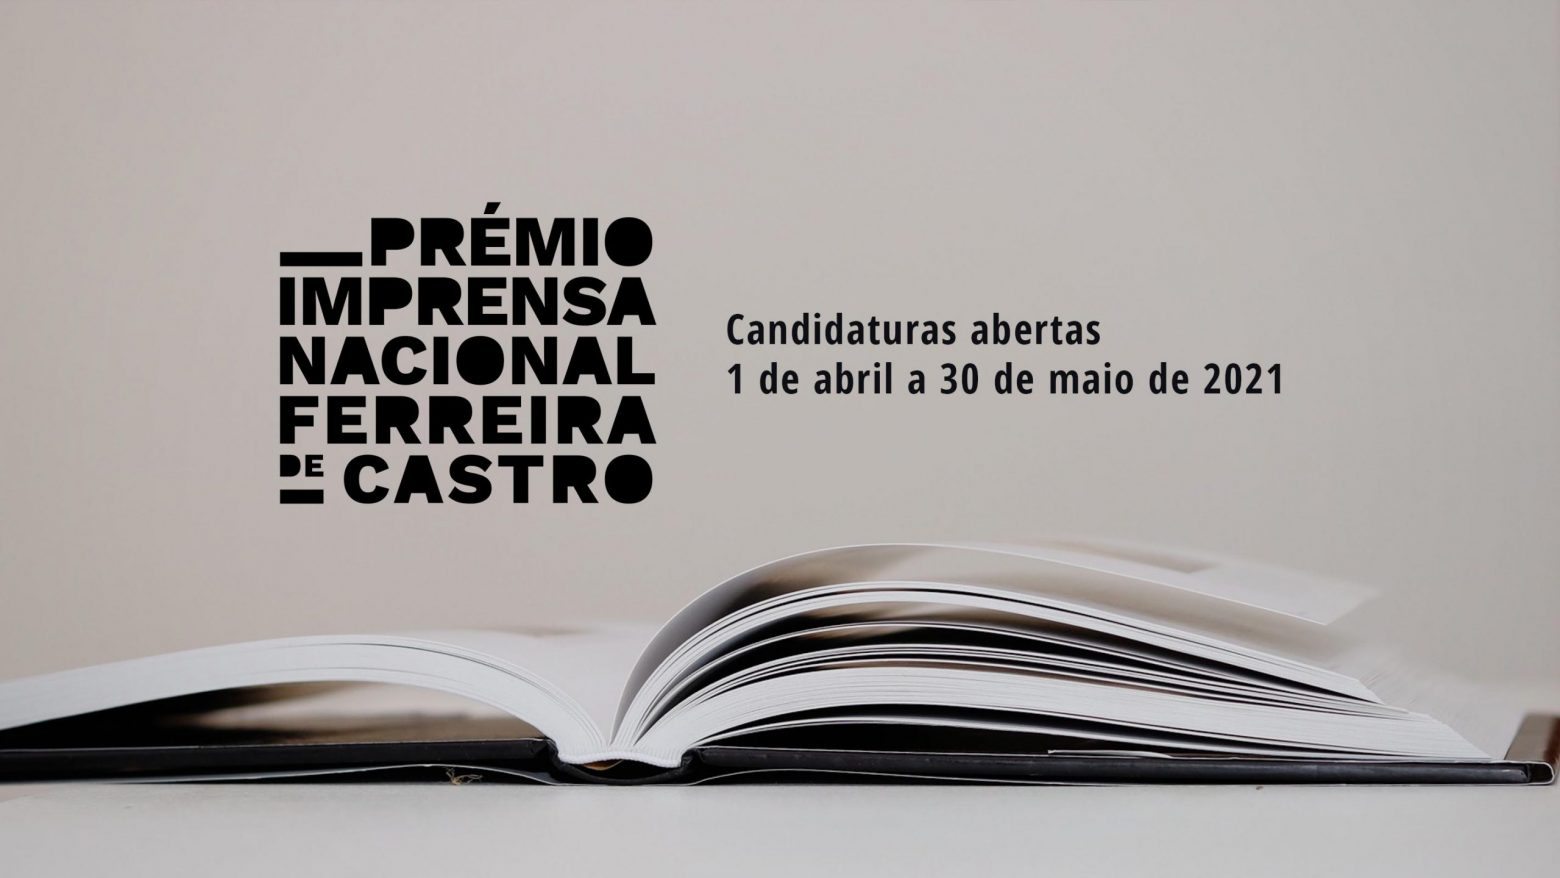 Candidaturas abertas | 3.ª edição do Prémio Imprensa Nacional/Ferreira de Castro de 1 de abril a 30 de maio